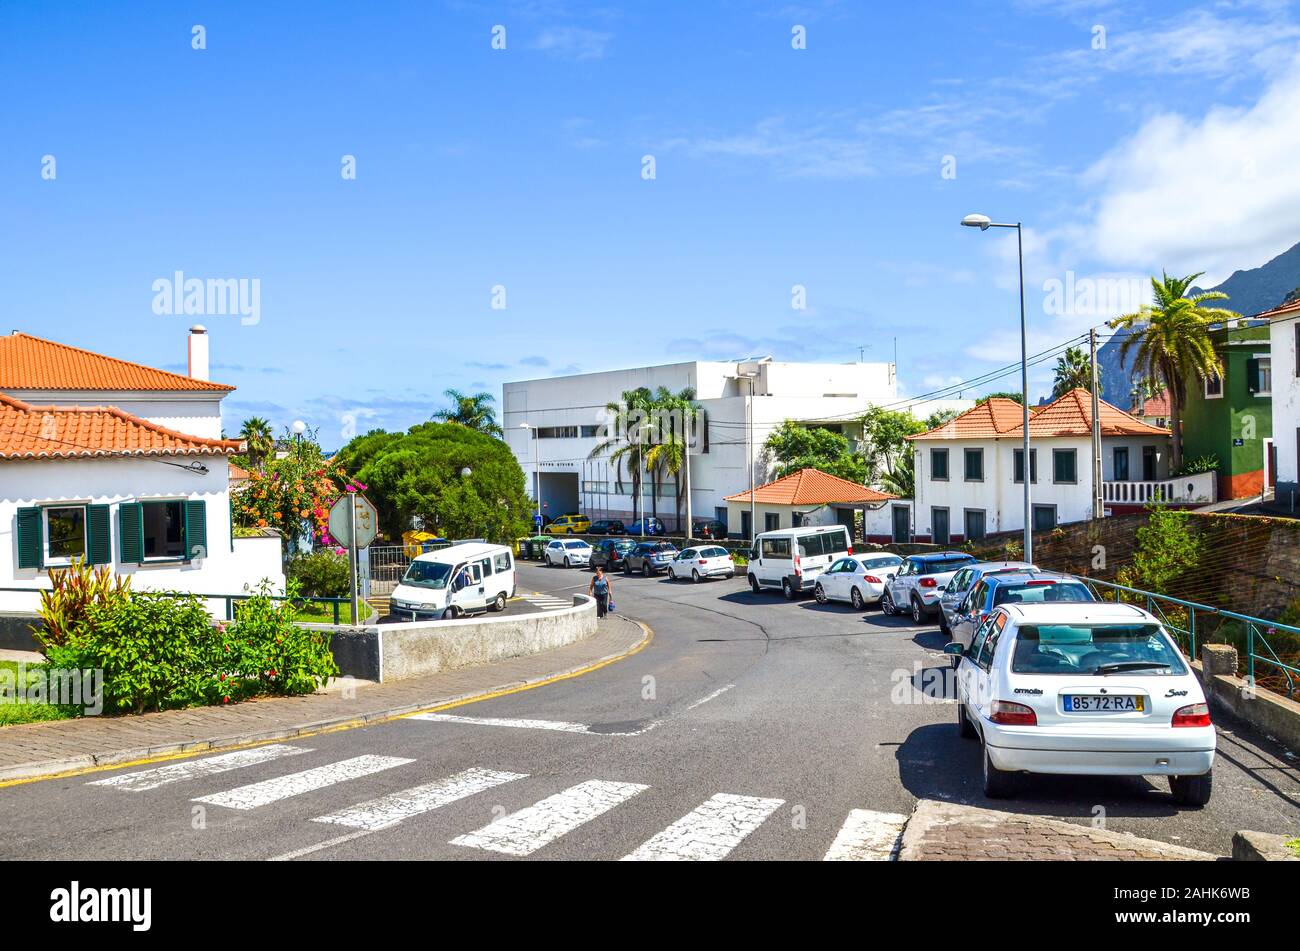 Porto da Cruz, Madeira, Portugal - Sep 24, 2019: Straße der malerischen portugiesischen Dorf. Häuser, Menschen auf der Straße, geparkte Autos. Sonnigen Tag, blauer Himmel. Zebrastreifen im Vordergrund. Stockfoto